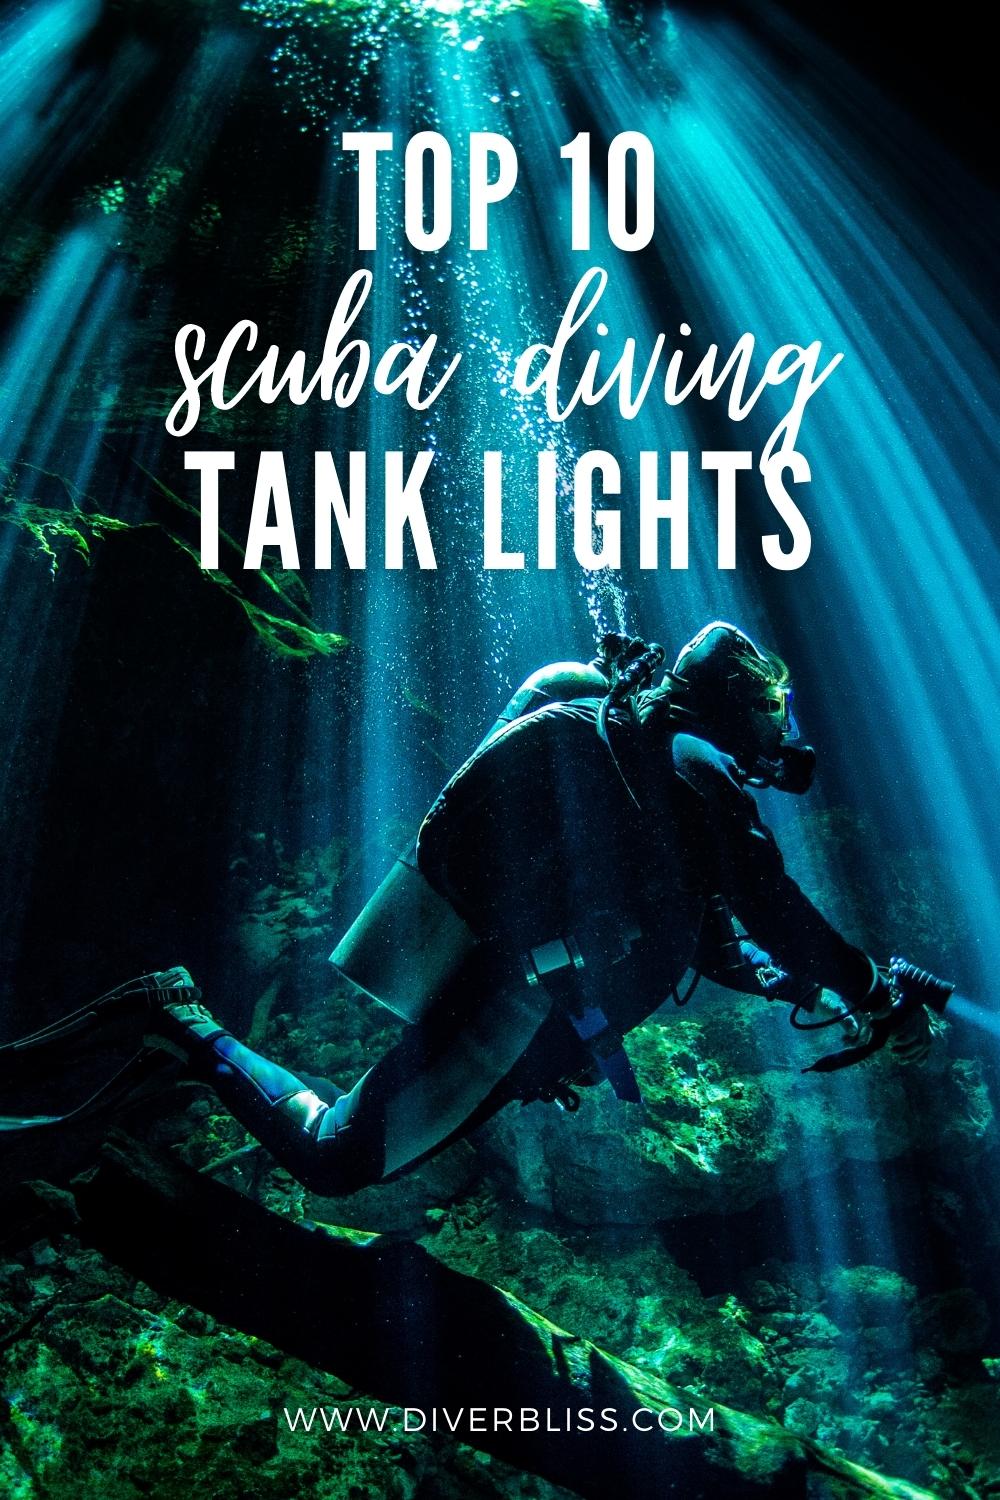 Top 10 scuba diving tank lights